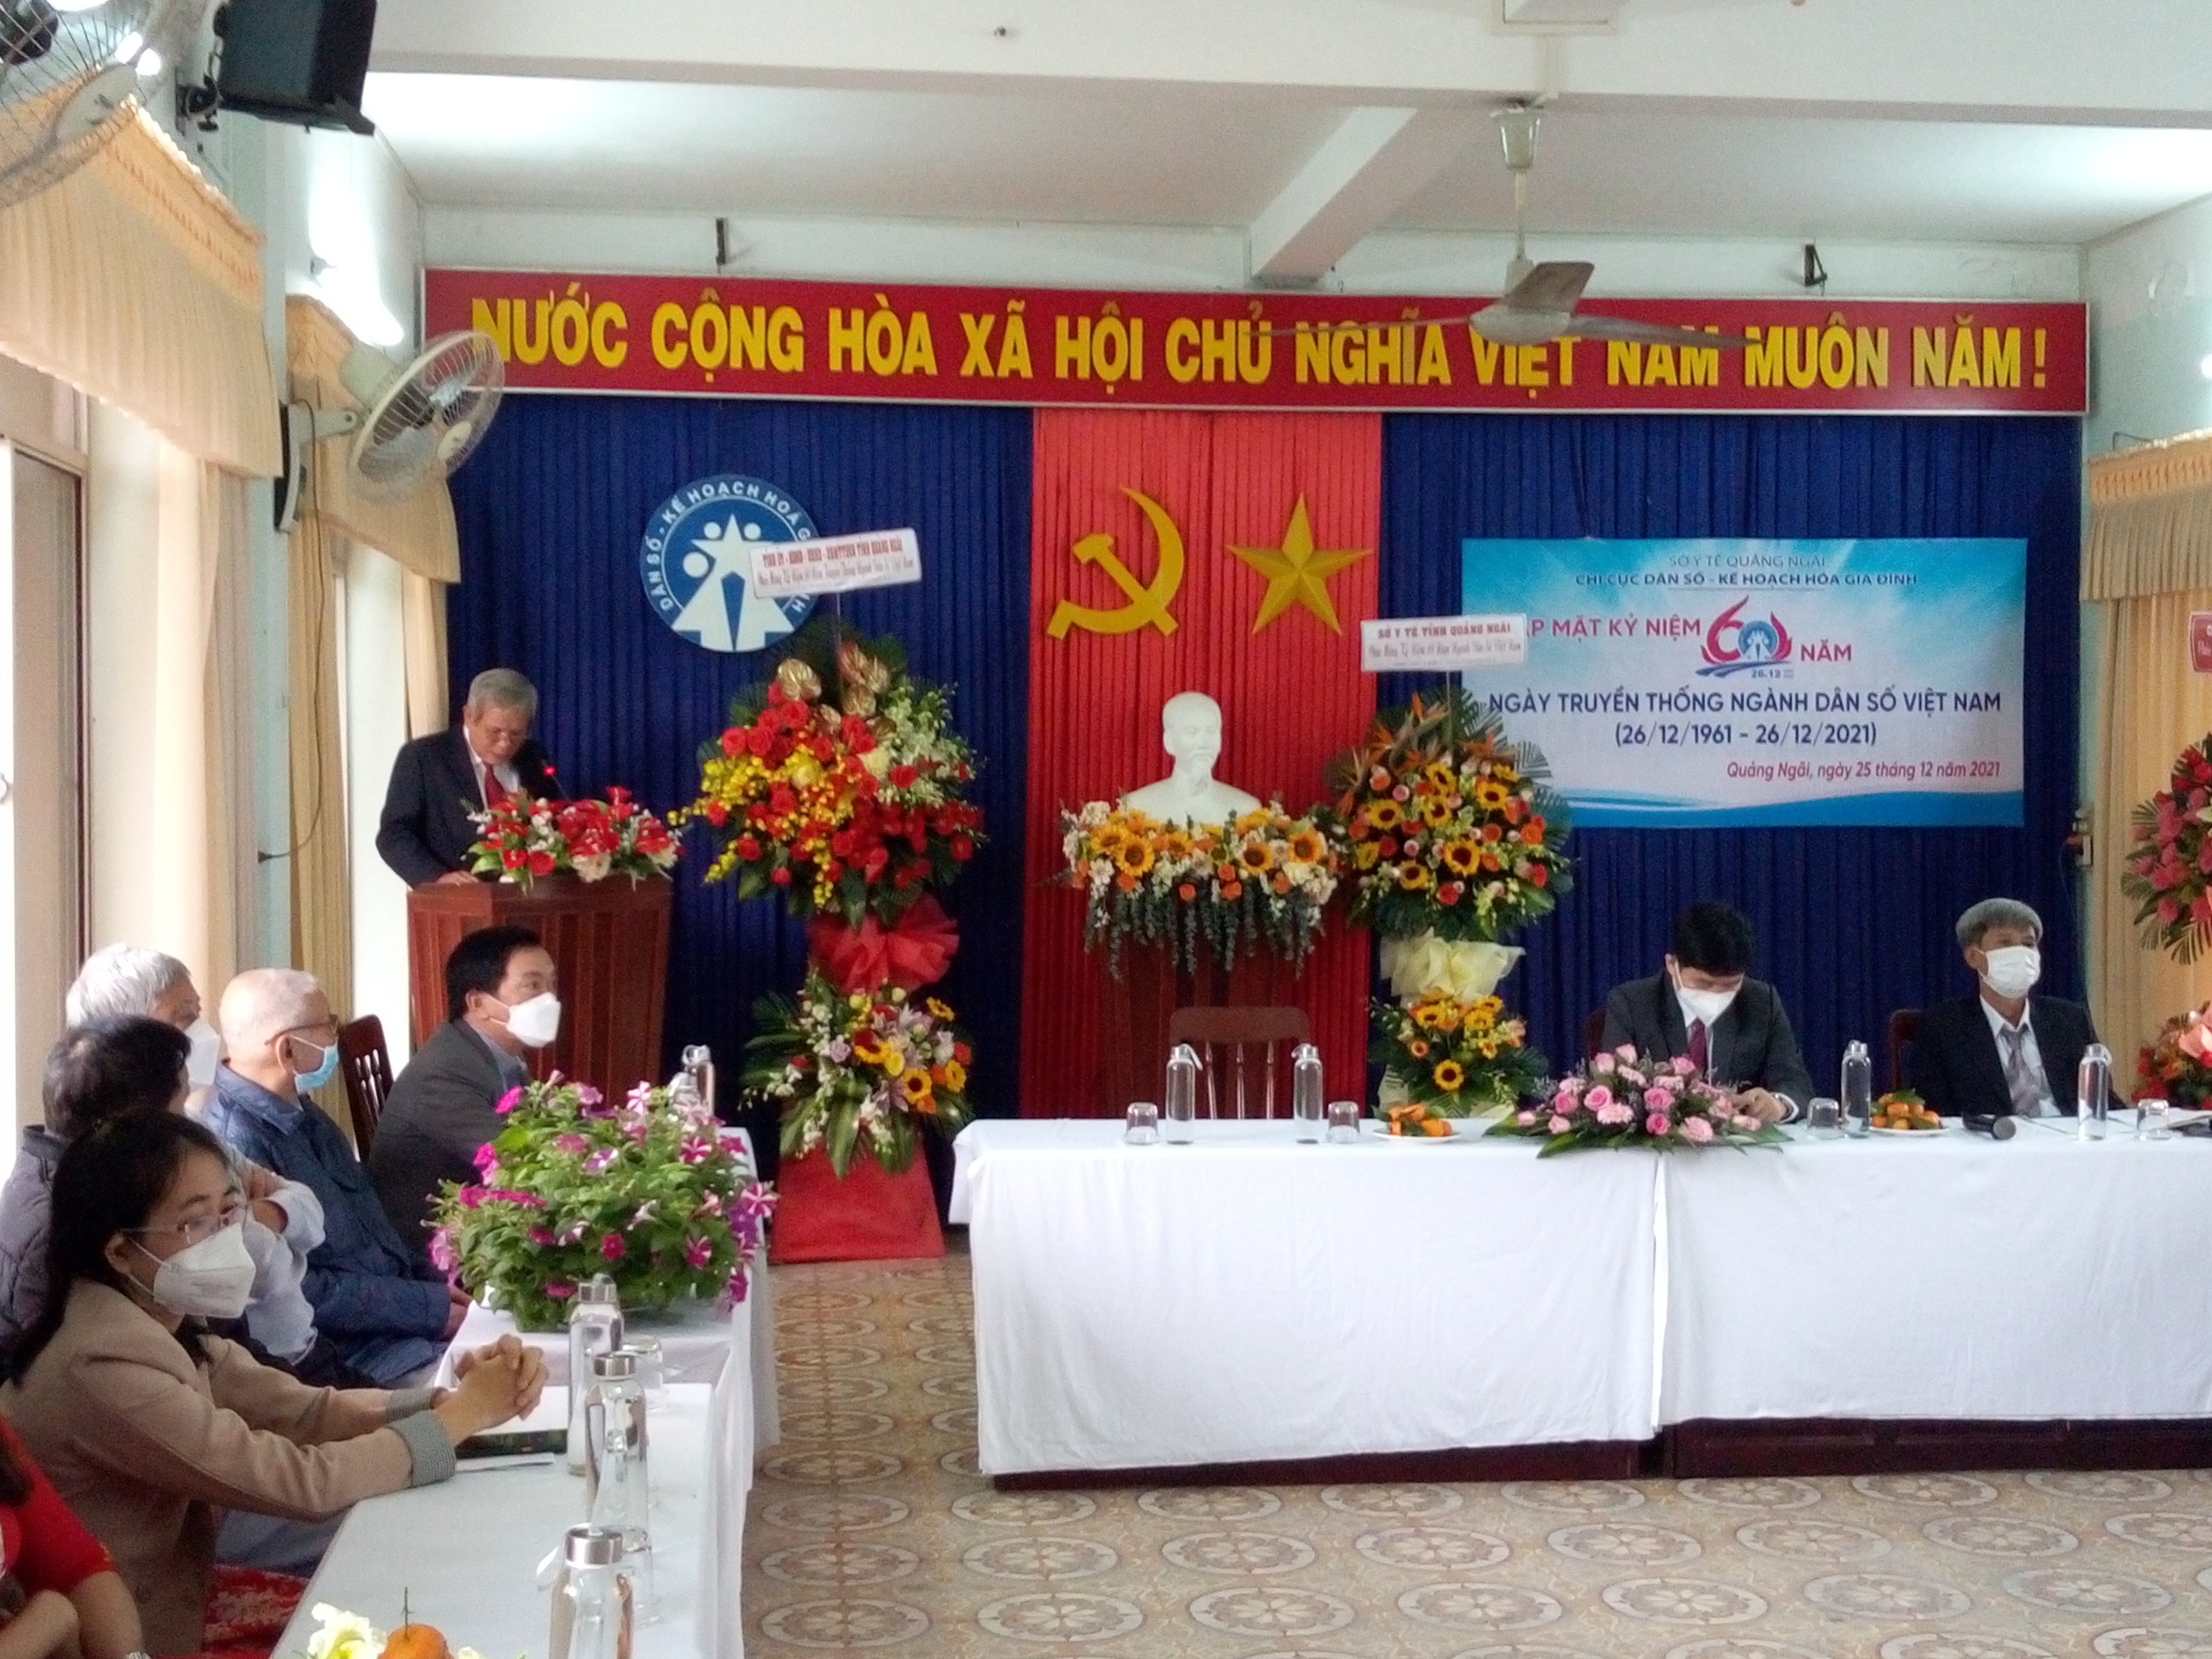 Tỉnh Quảng Ngãi: Tổ chức Gặp mặt kỷ niệm 60 năm ngày truyền thống ngành Dân số Việt Nam (26/12/1961-26/12/2021)